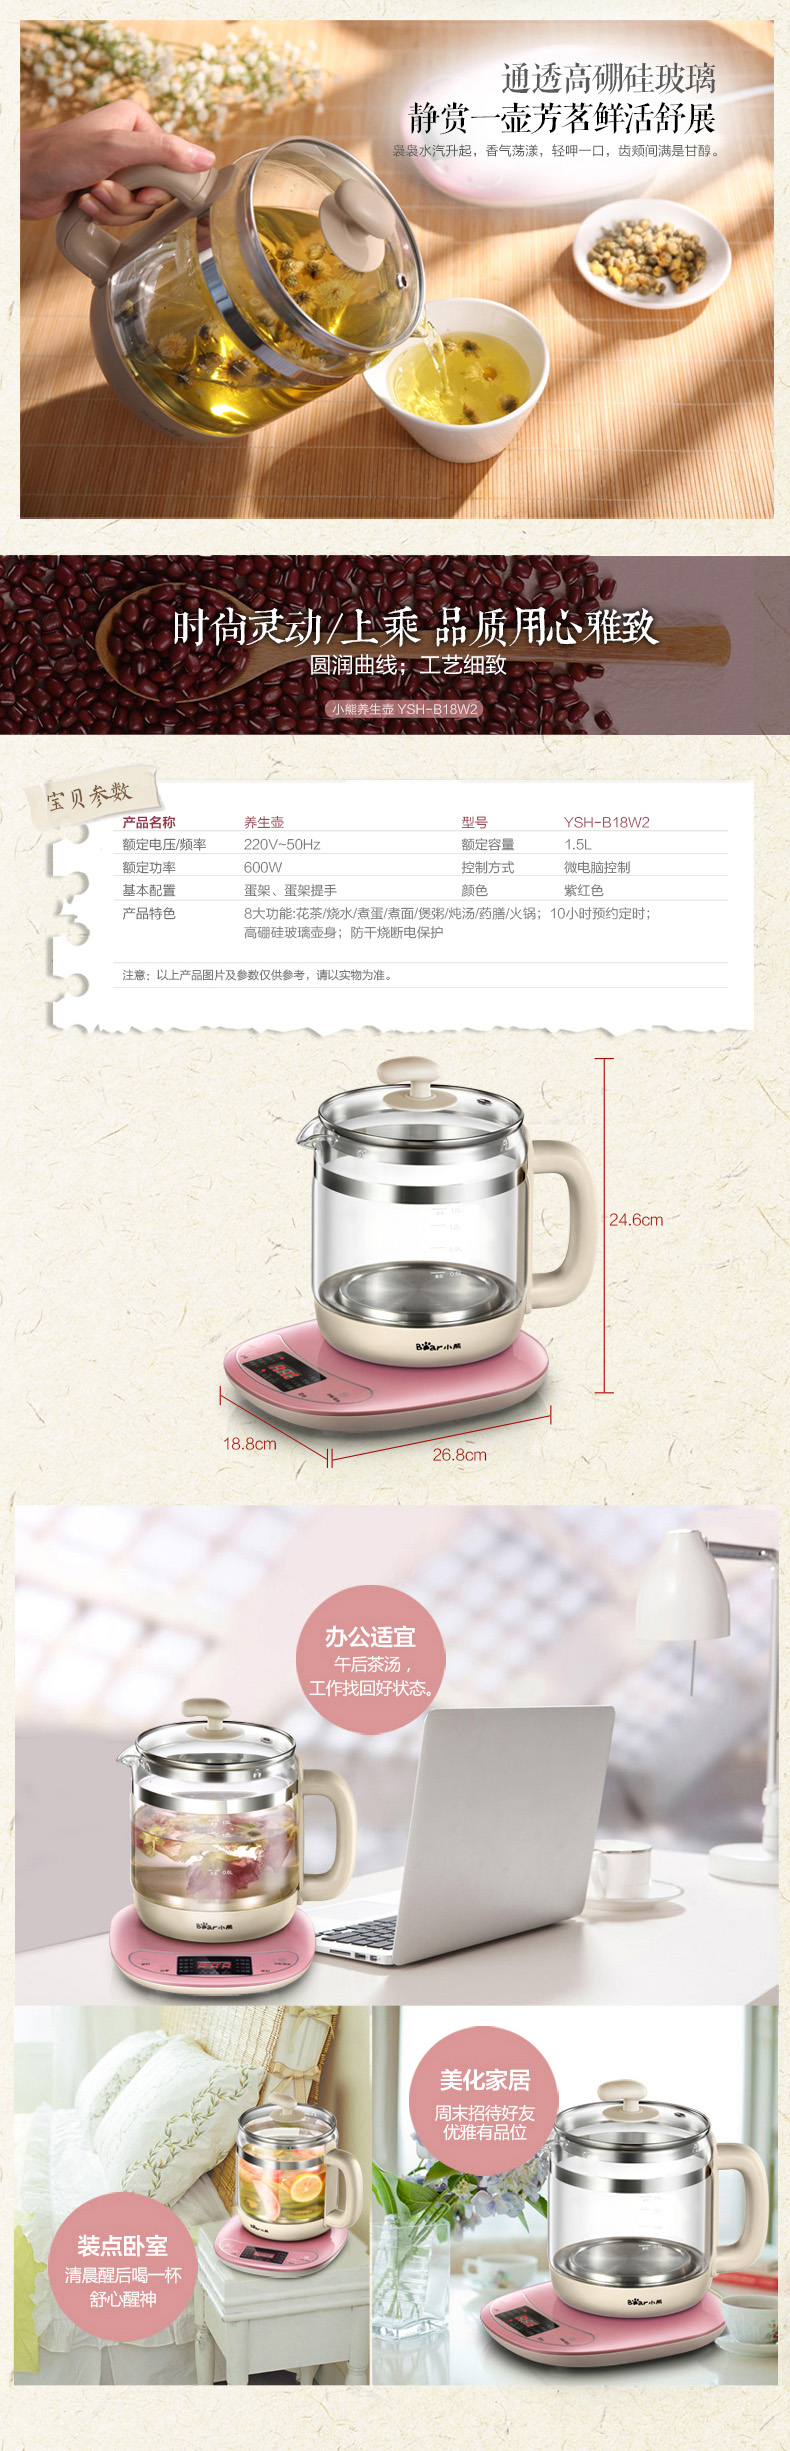 Bear/小熊YSH-B18W2小熊养生壶全自动多功能玻璃电煎药壶煮茶壶